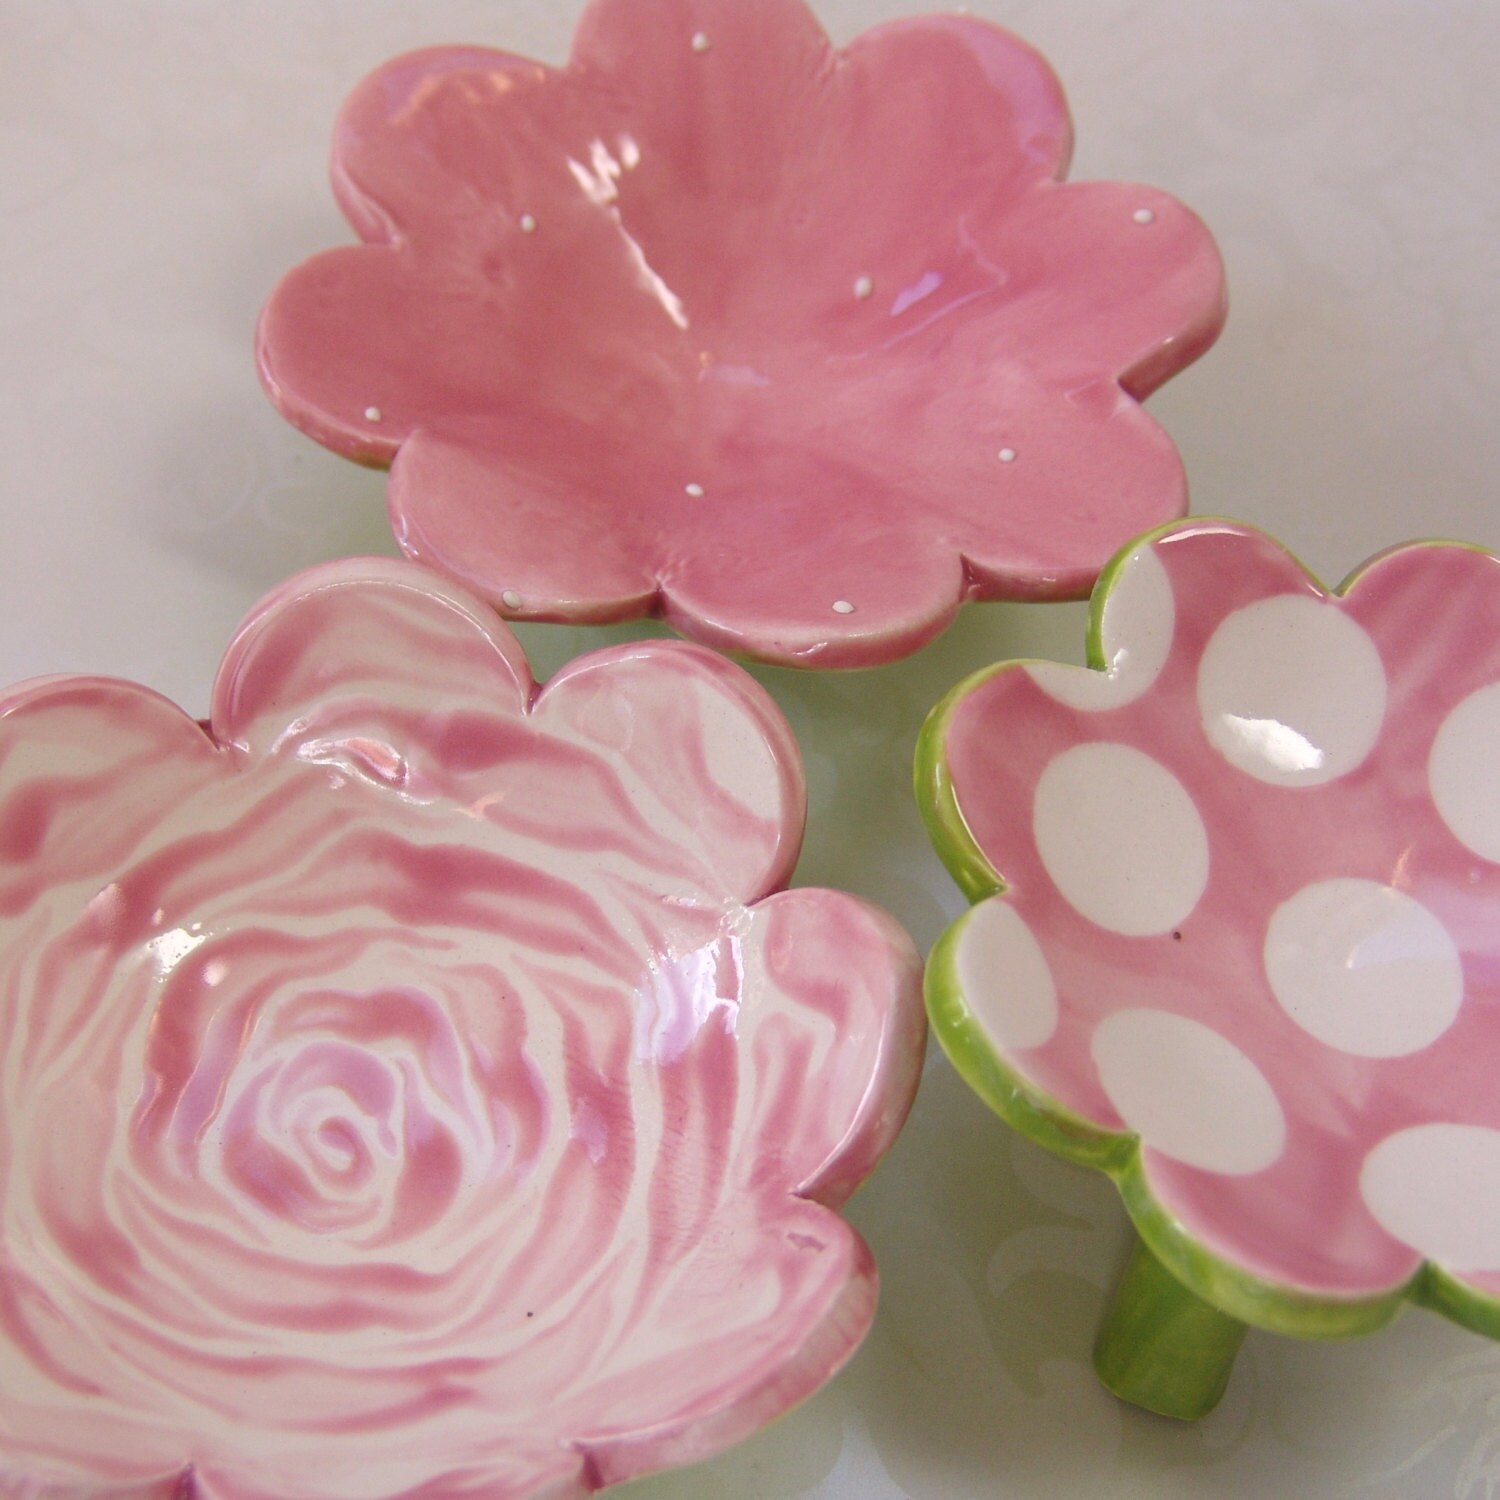 Pink rose & polka dot dish set :) ceramic serving sushi - maryjudy